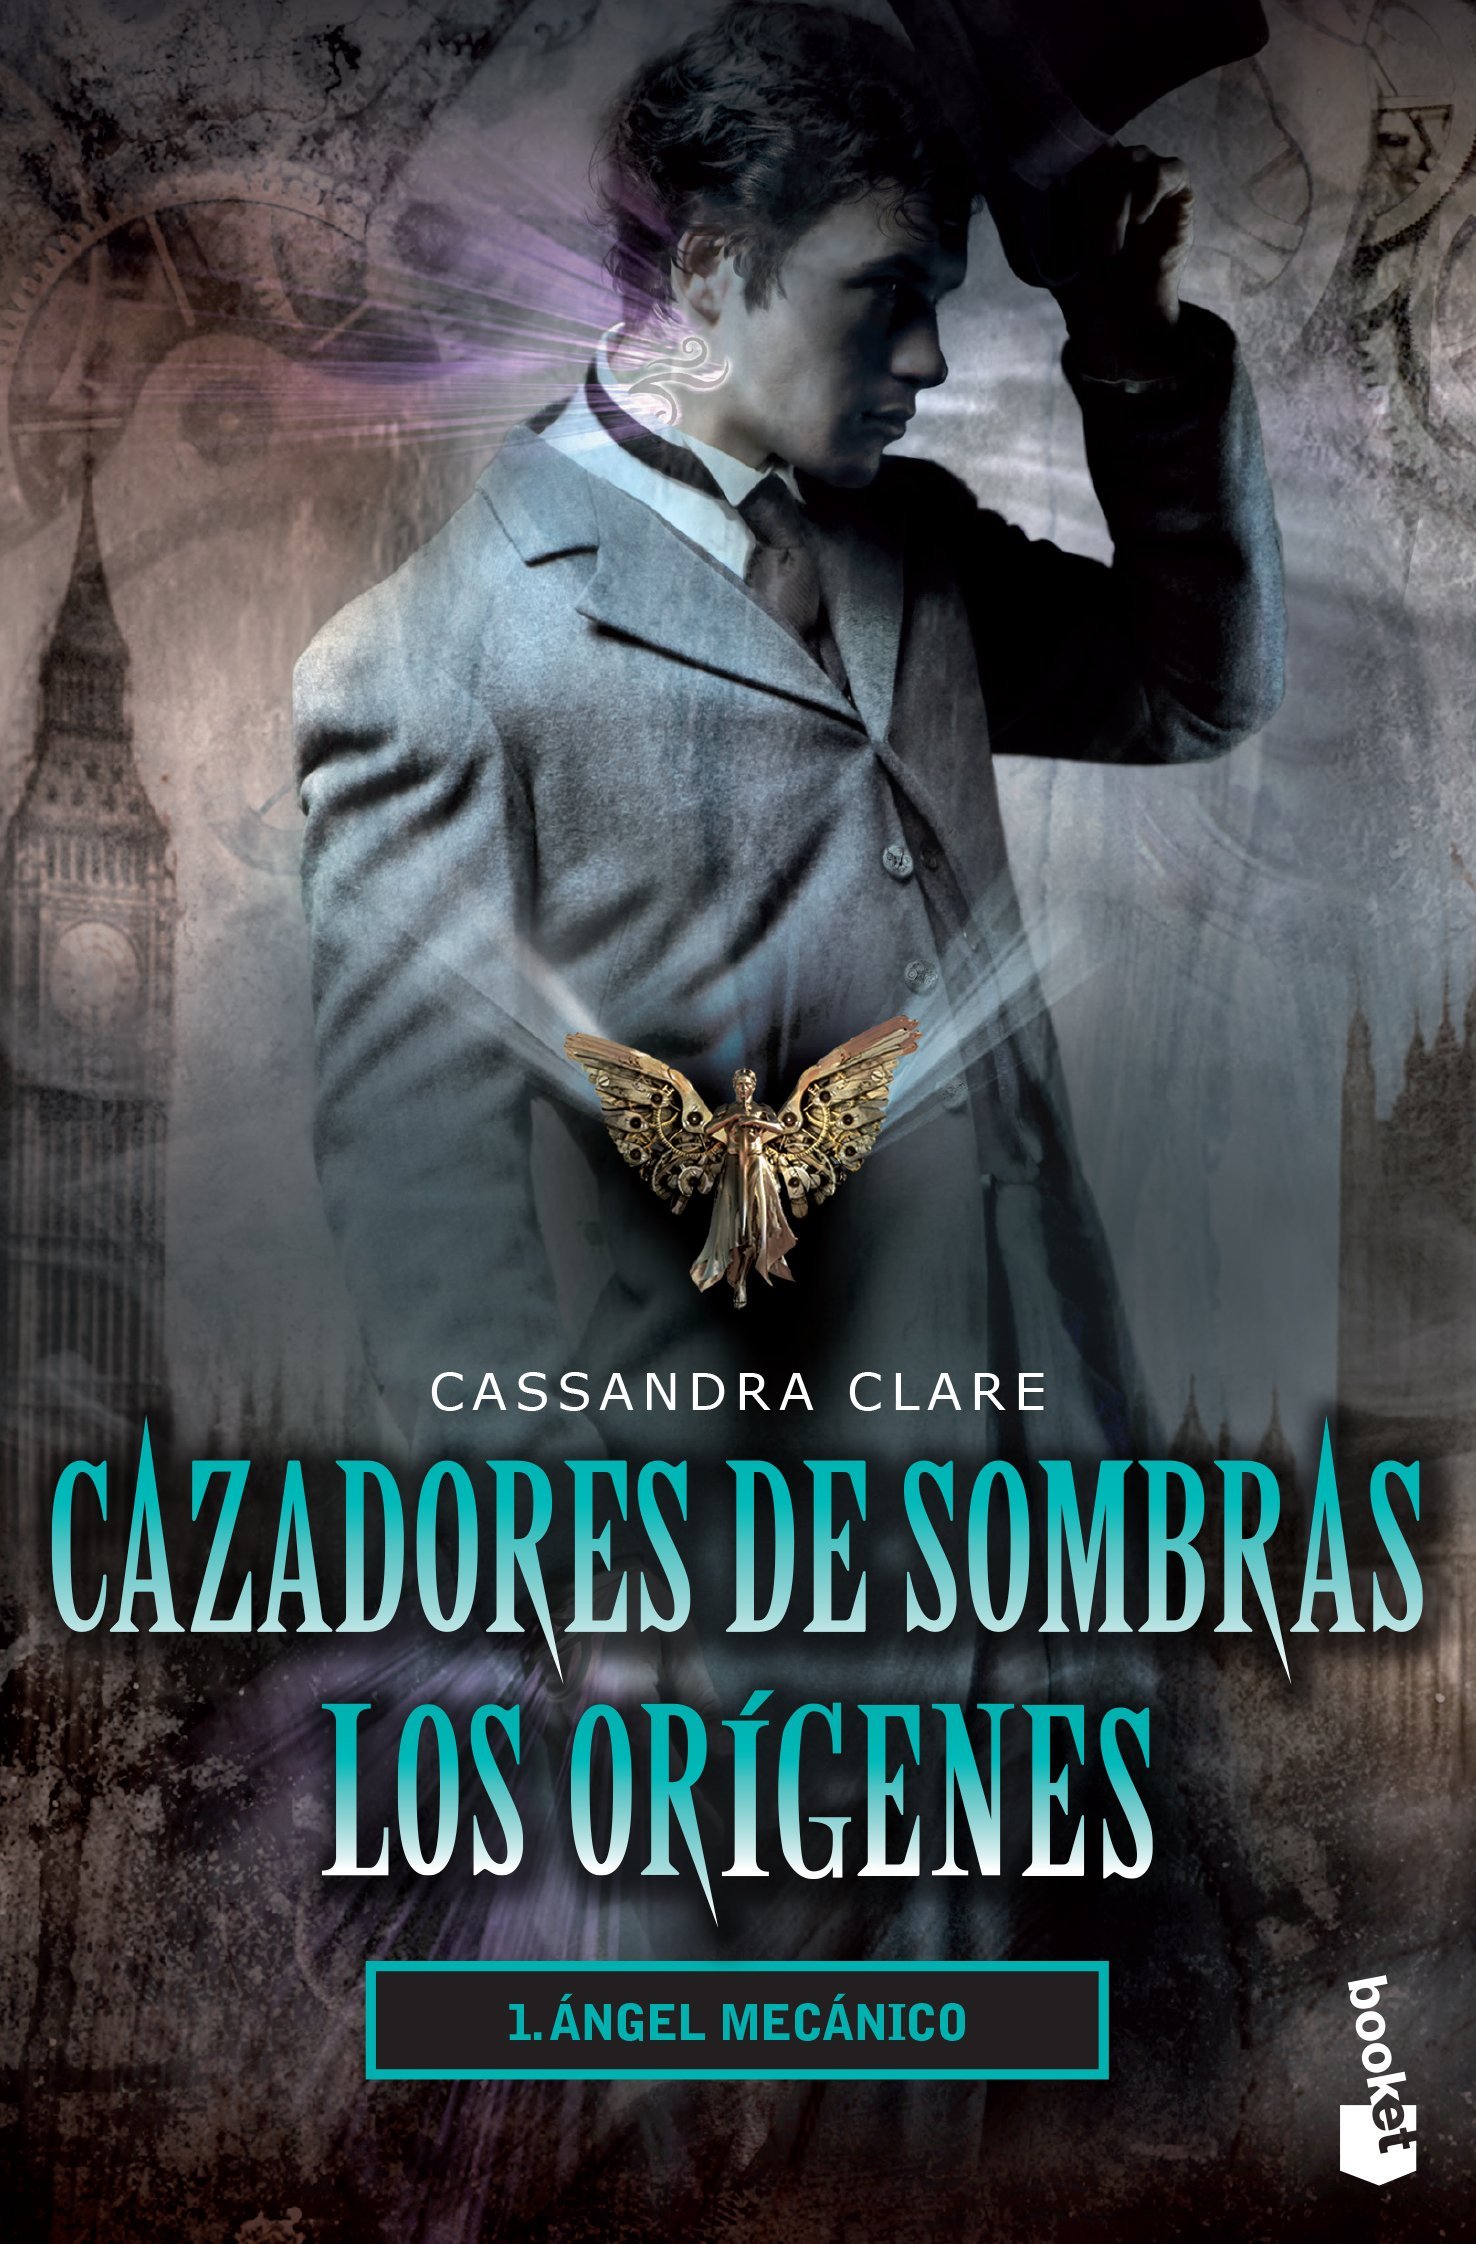 Libro: Cazadores de Sombras, Los Orígenes 1, Ángel Mecánico por Cassandra Clare